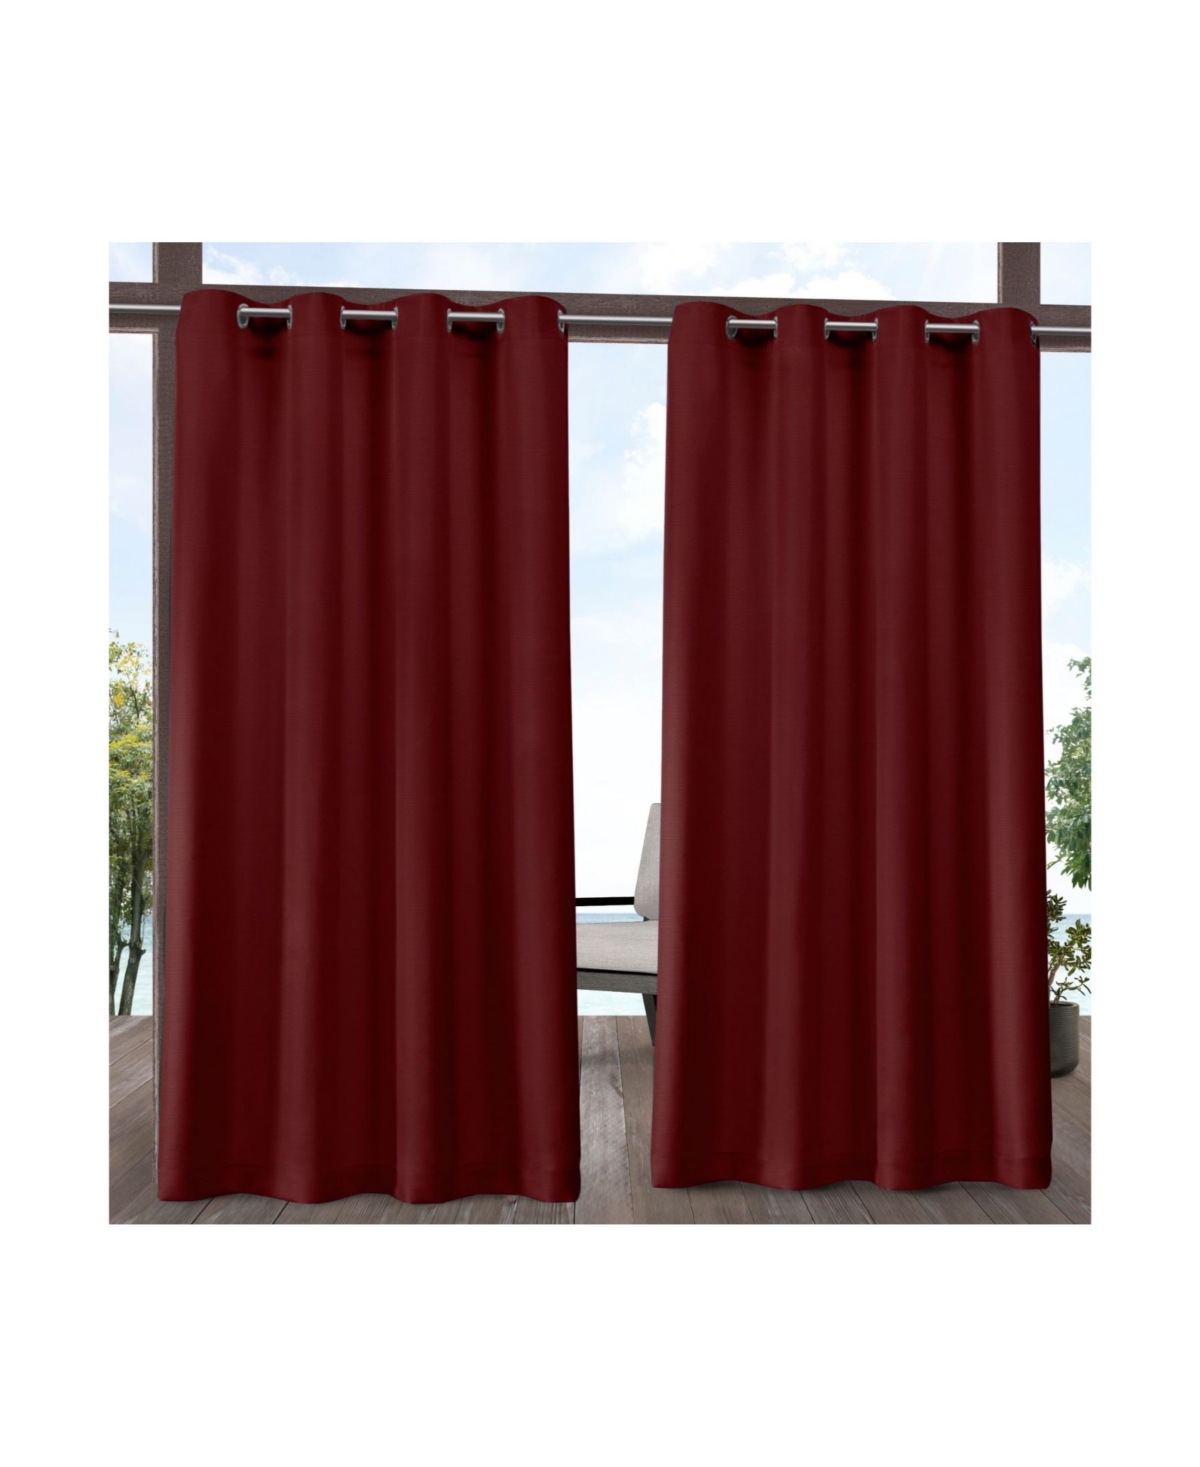 Delano Heavyweight Textured Indoor/Outdoor Grommet Top Curtain Panel Pair, 54" x 84" - Natural